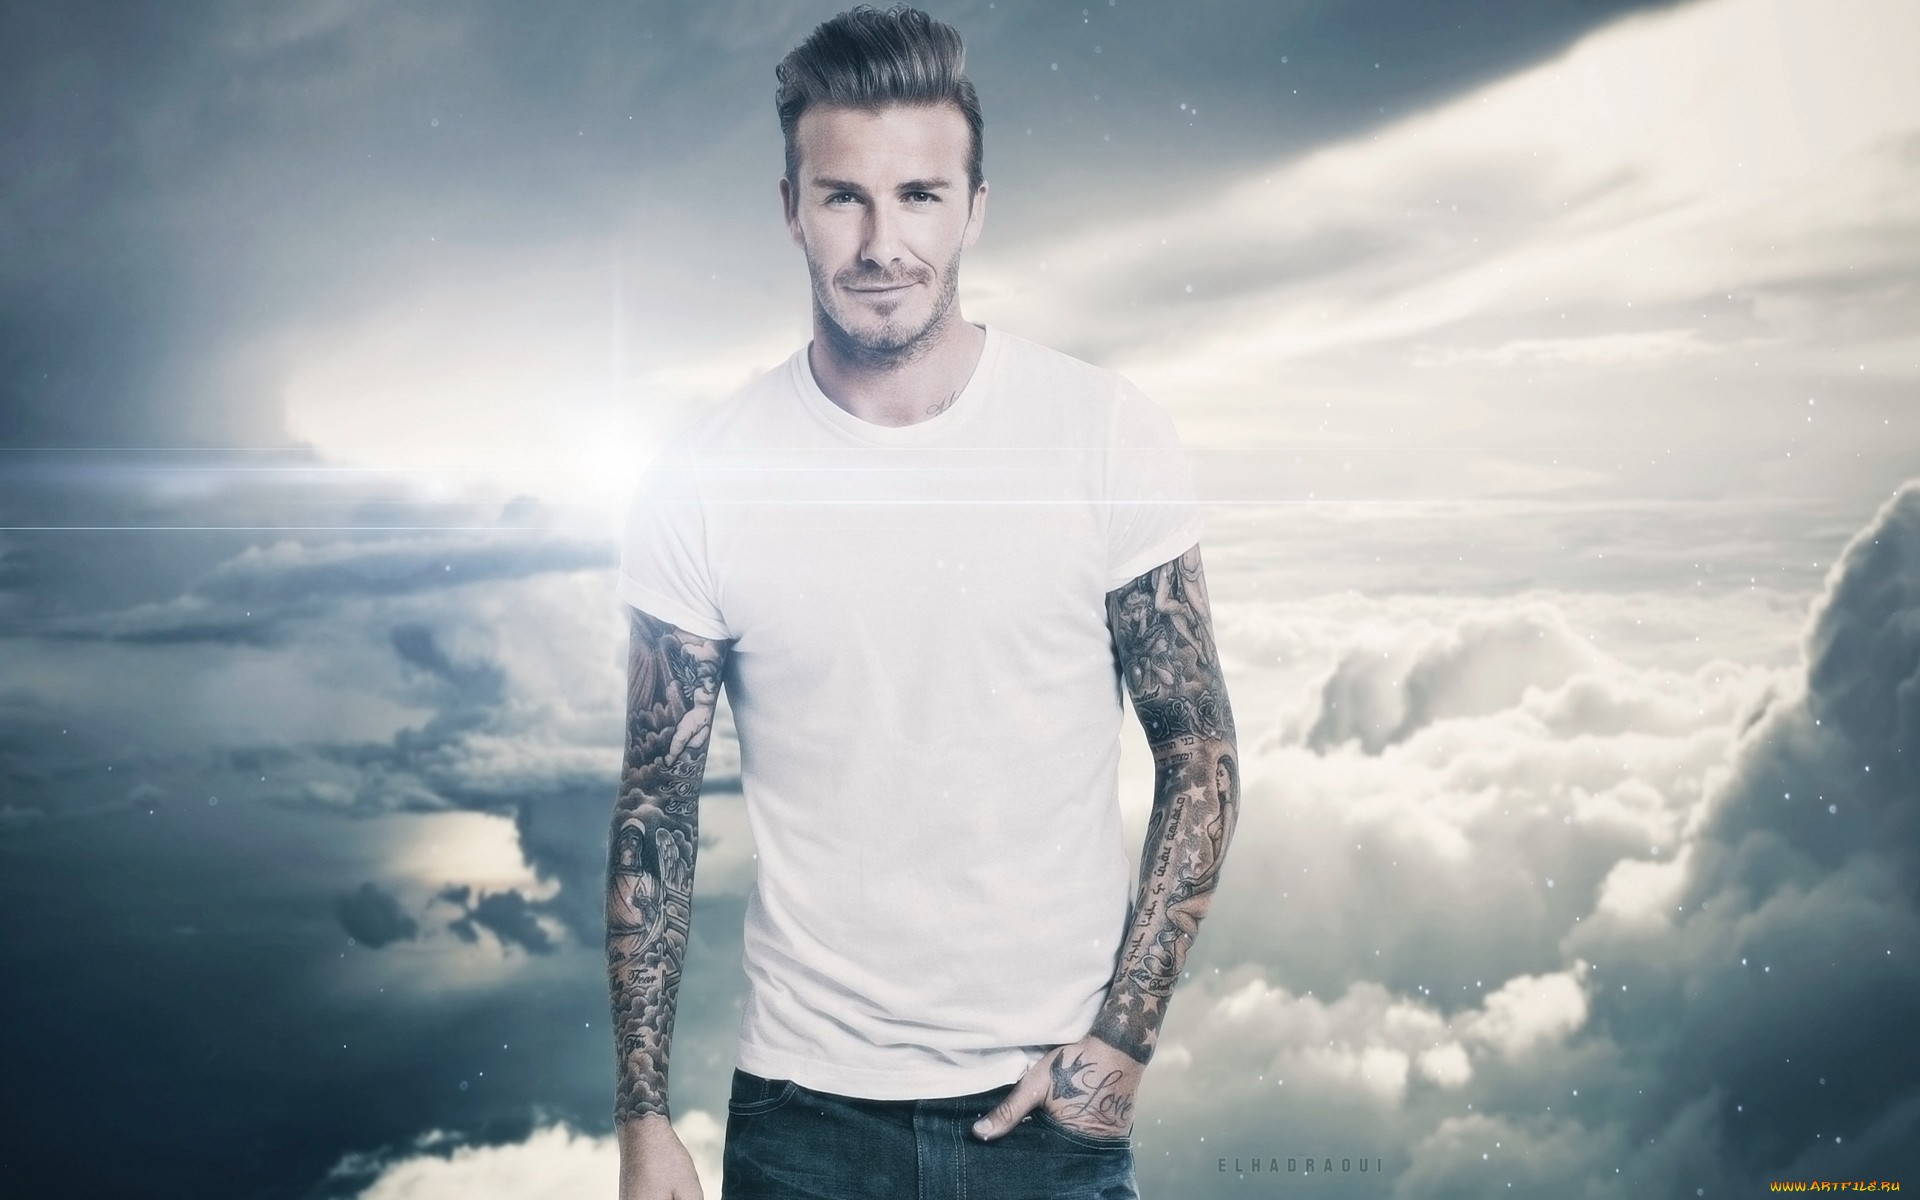  David Beckham HQ Background Images